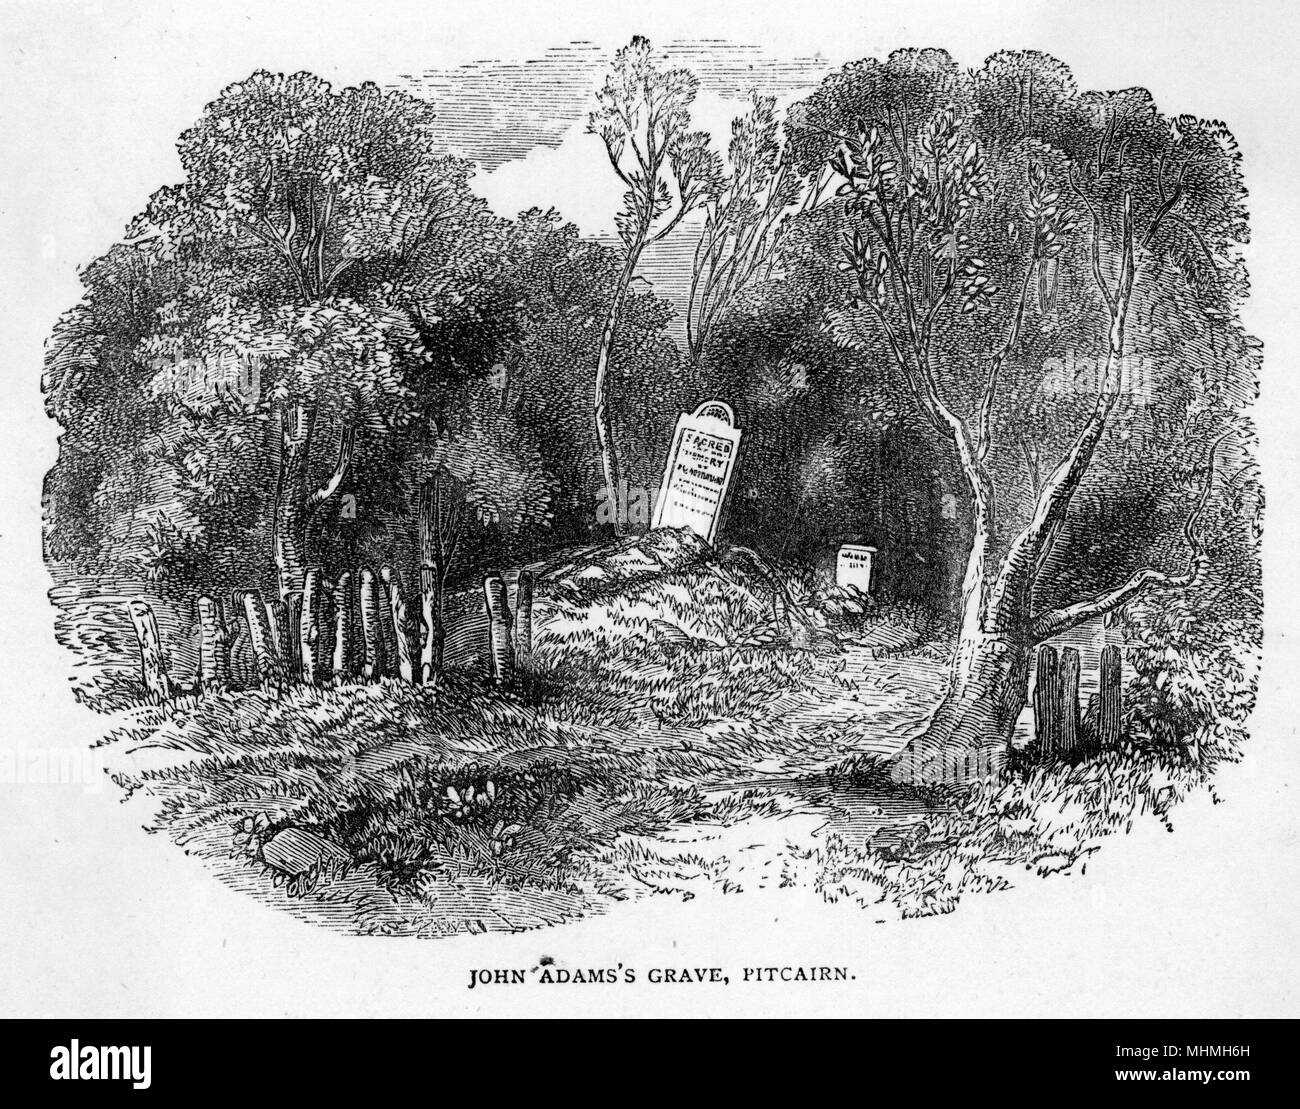 La tumba de John Adams, uno de los amotinados que huyeron y se establecieron en la Isla de Pitcairn, muriendo en 1829 a la edad de 65 años Fecha: 1829 Foto de stock